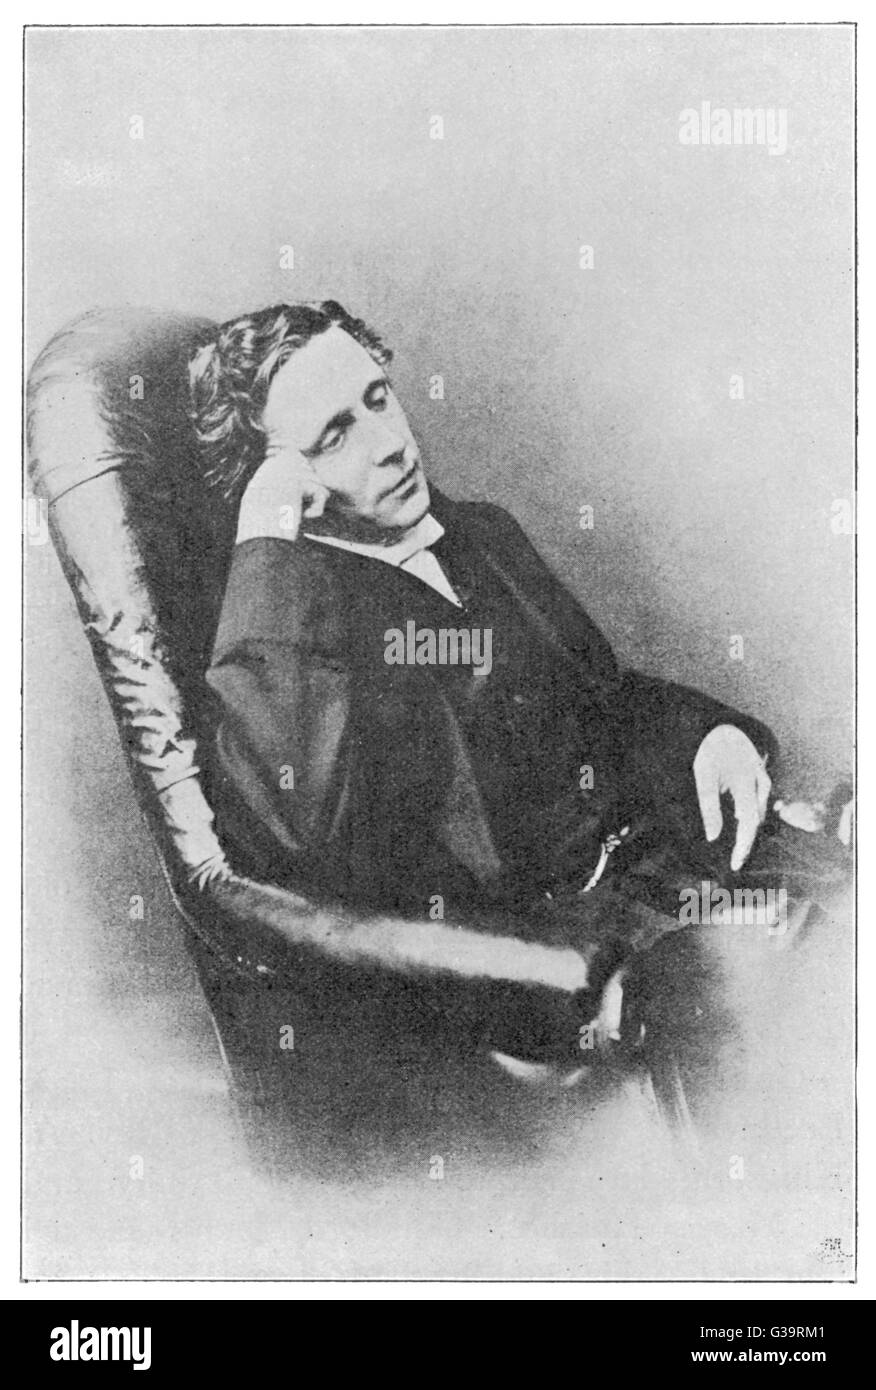 LEWIS CARROLL alias englischer Mathematiker CHARLES LUTWIDGE DODGSON, Pfarrer und Schriftsteller - Schöpfer von 'Alice' Datum: 1832-1898 Stockfoto